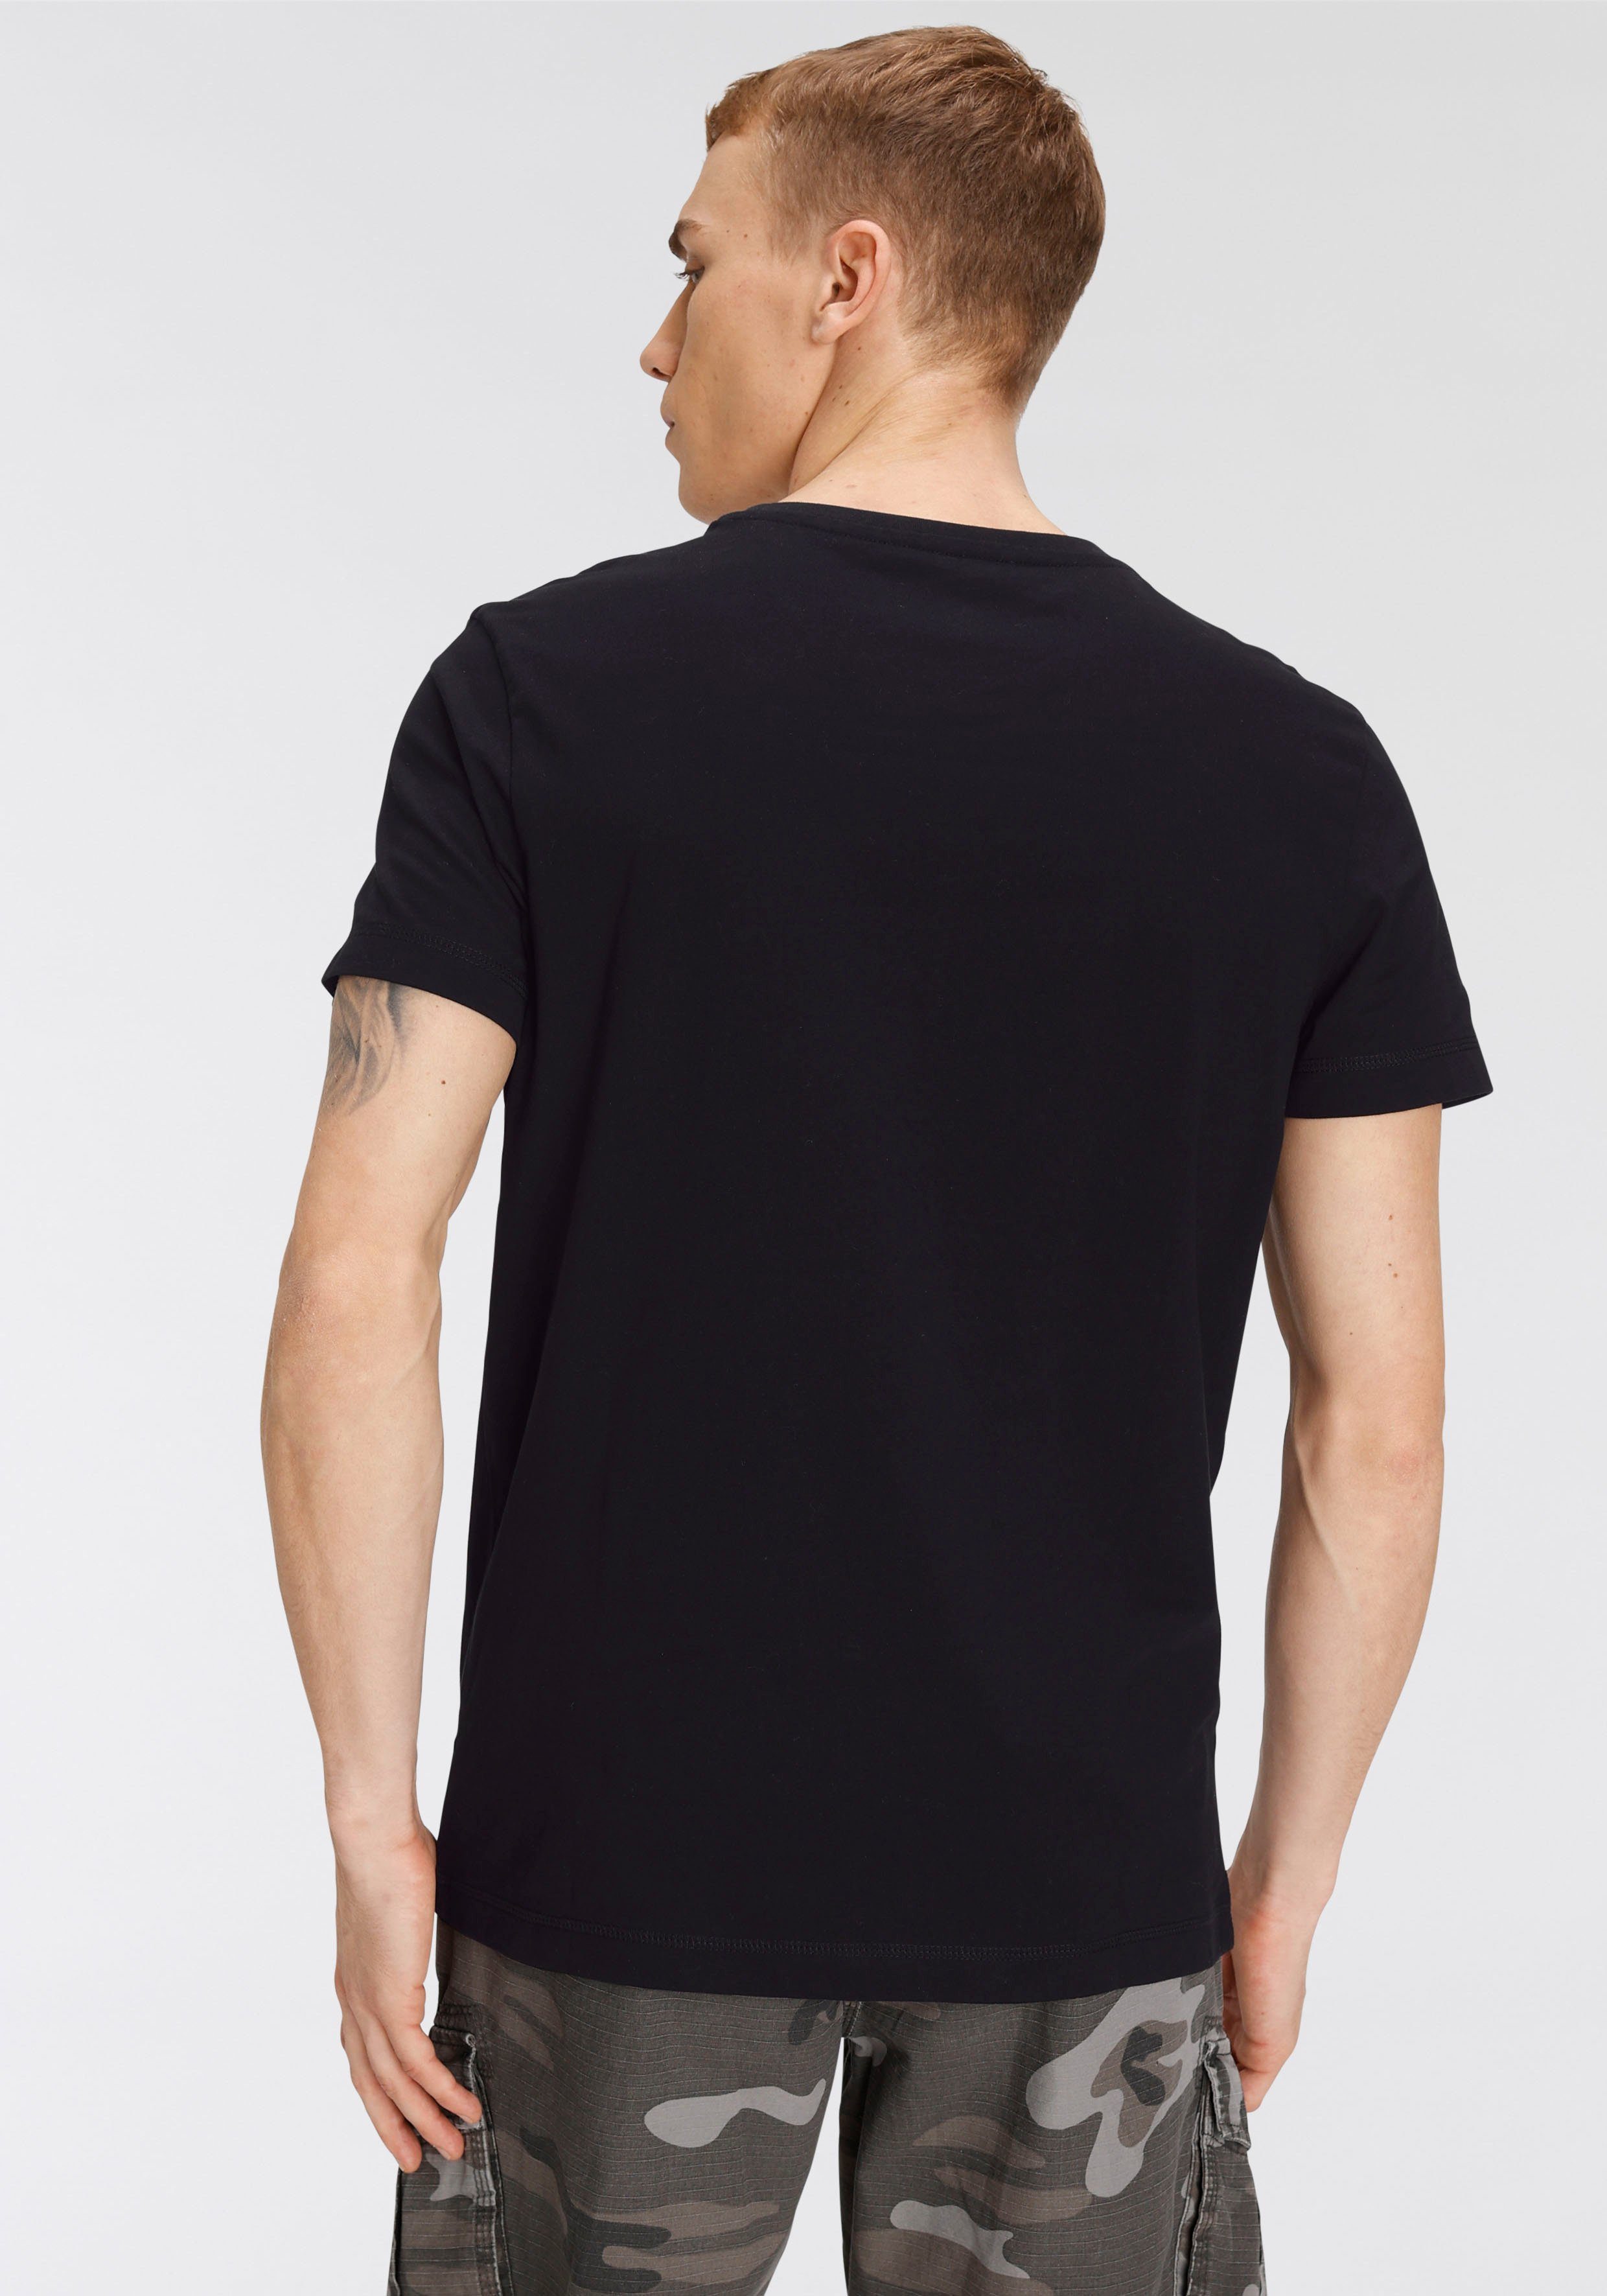 AJC T-Shirt Brustbereich schwarz mit im großem Print